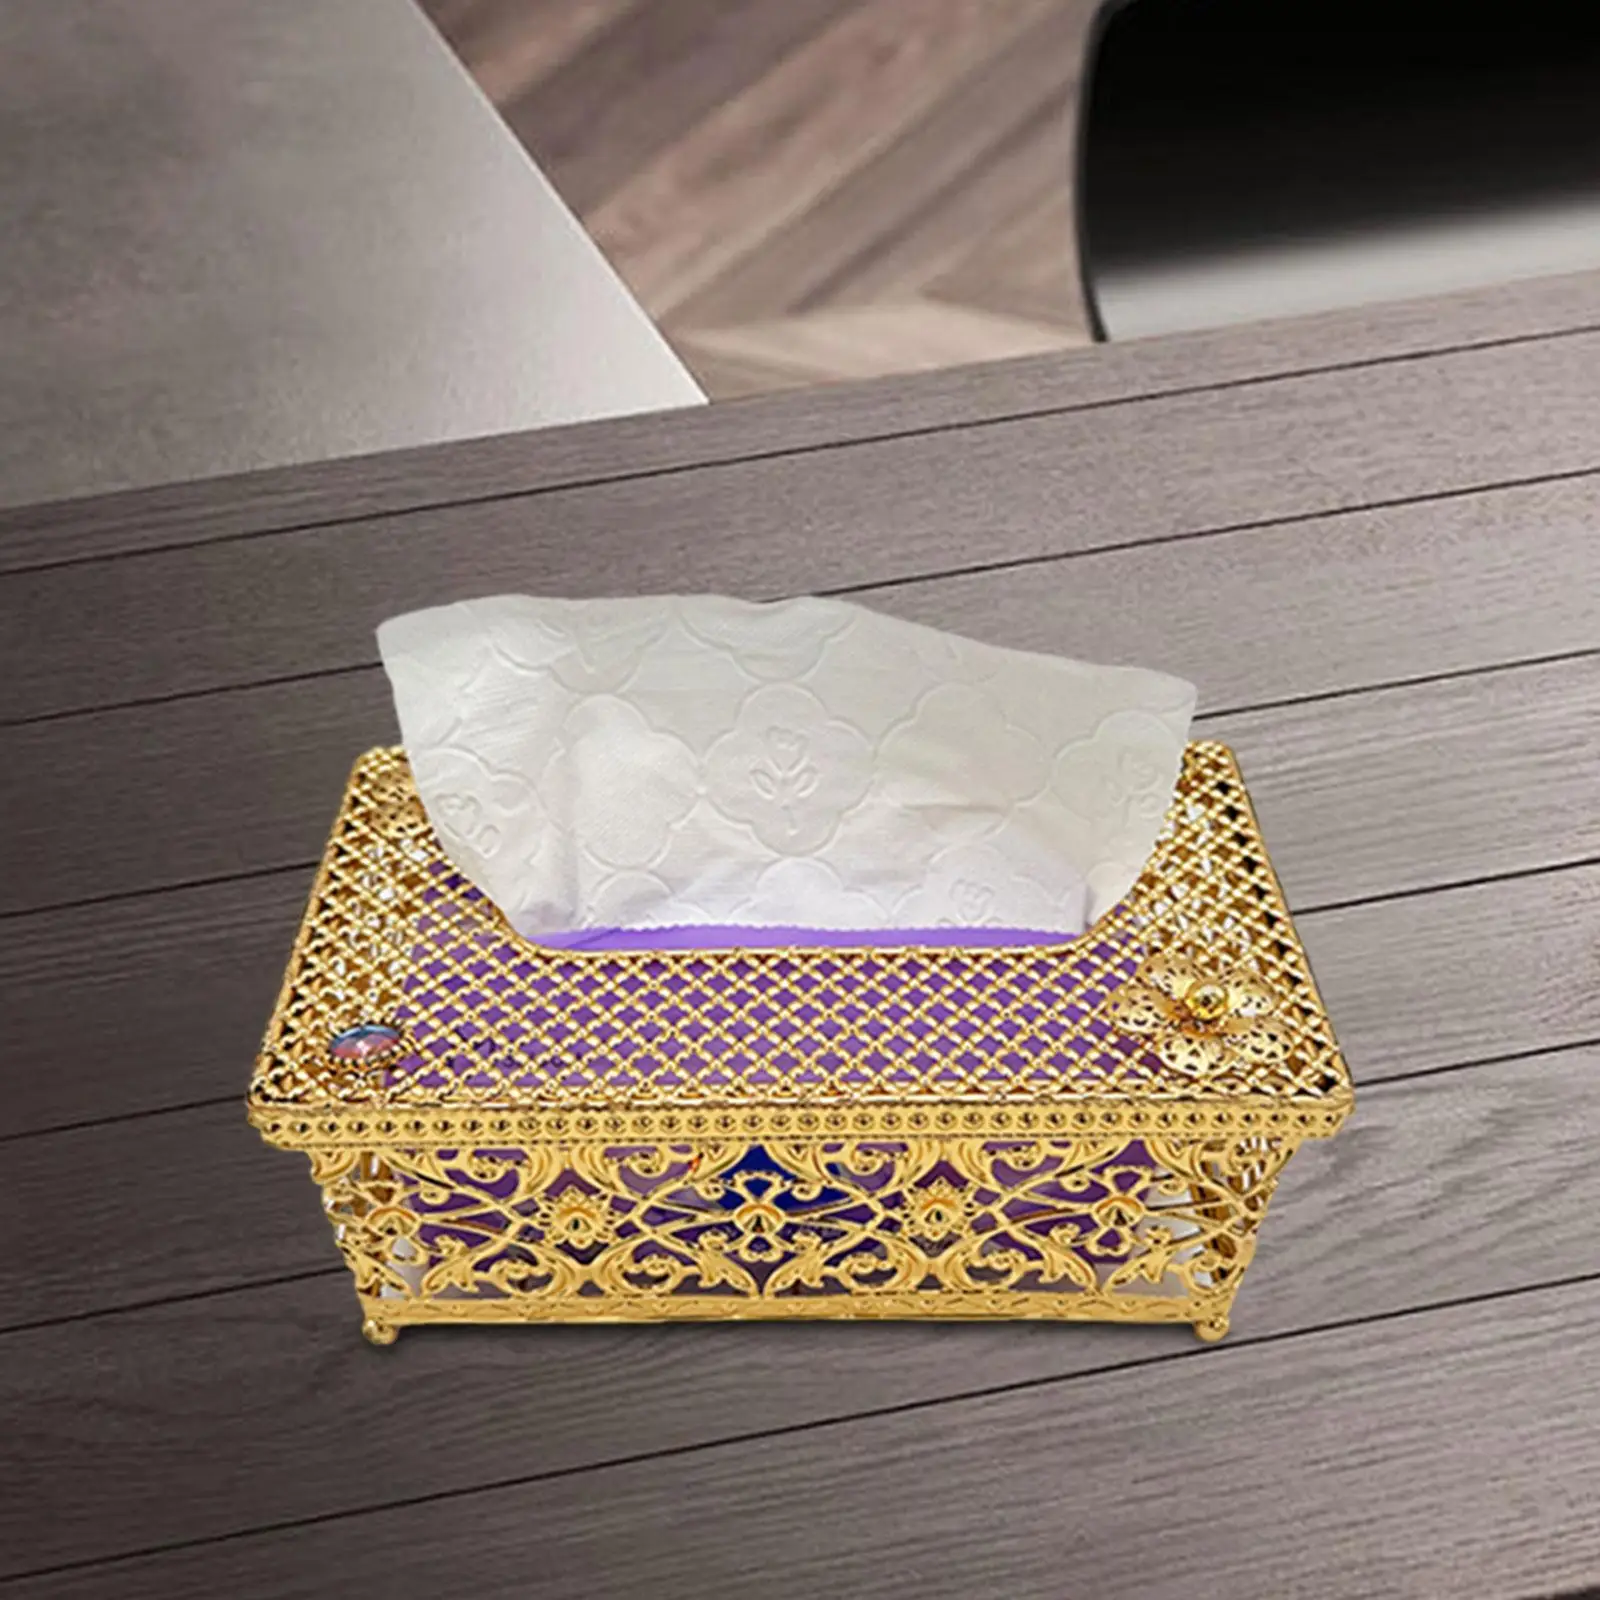 Facial Tissue Box Cover Bathroom Tissue Holders Paper Facial Tissue Box Cover Paper Storage Holder for Decor Countertop